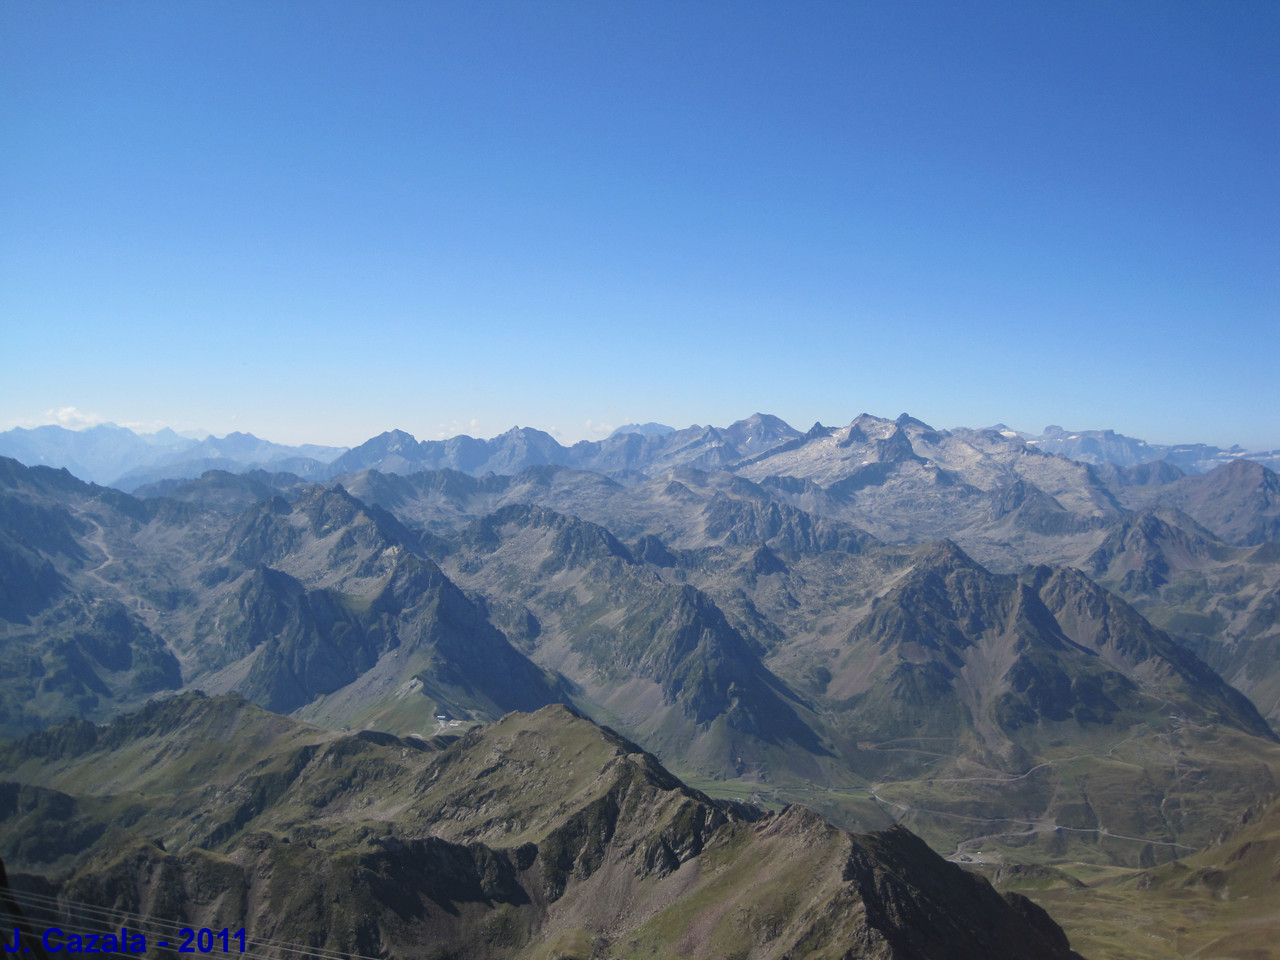 Paysage incontournable des Pyrénées : La chaîne des Pyrénées depuis le Pic du Midi de Bigorre